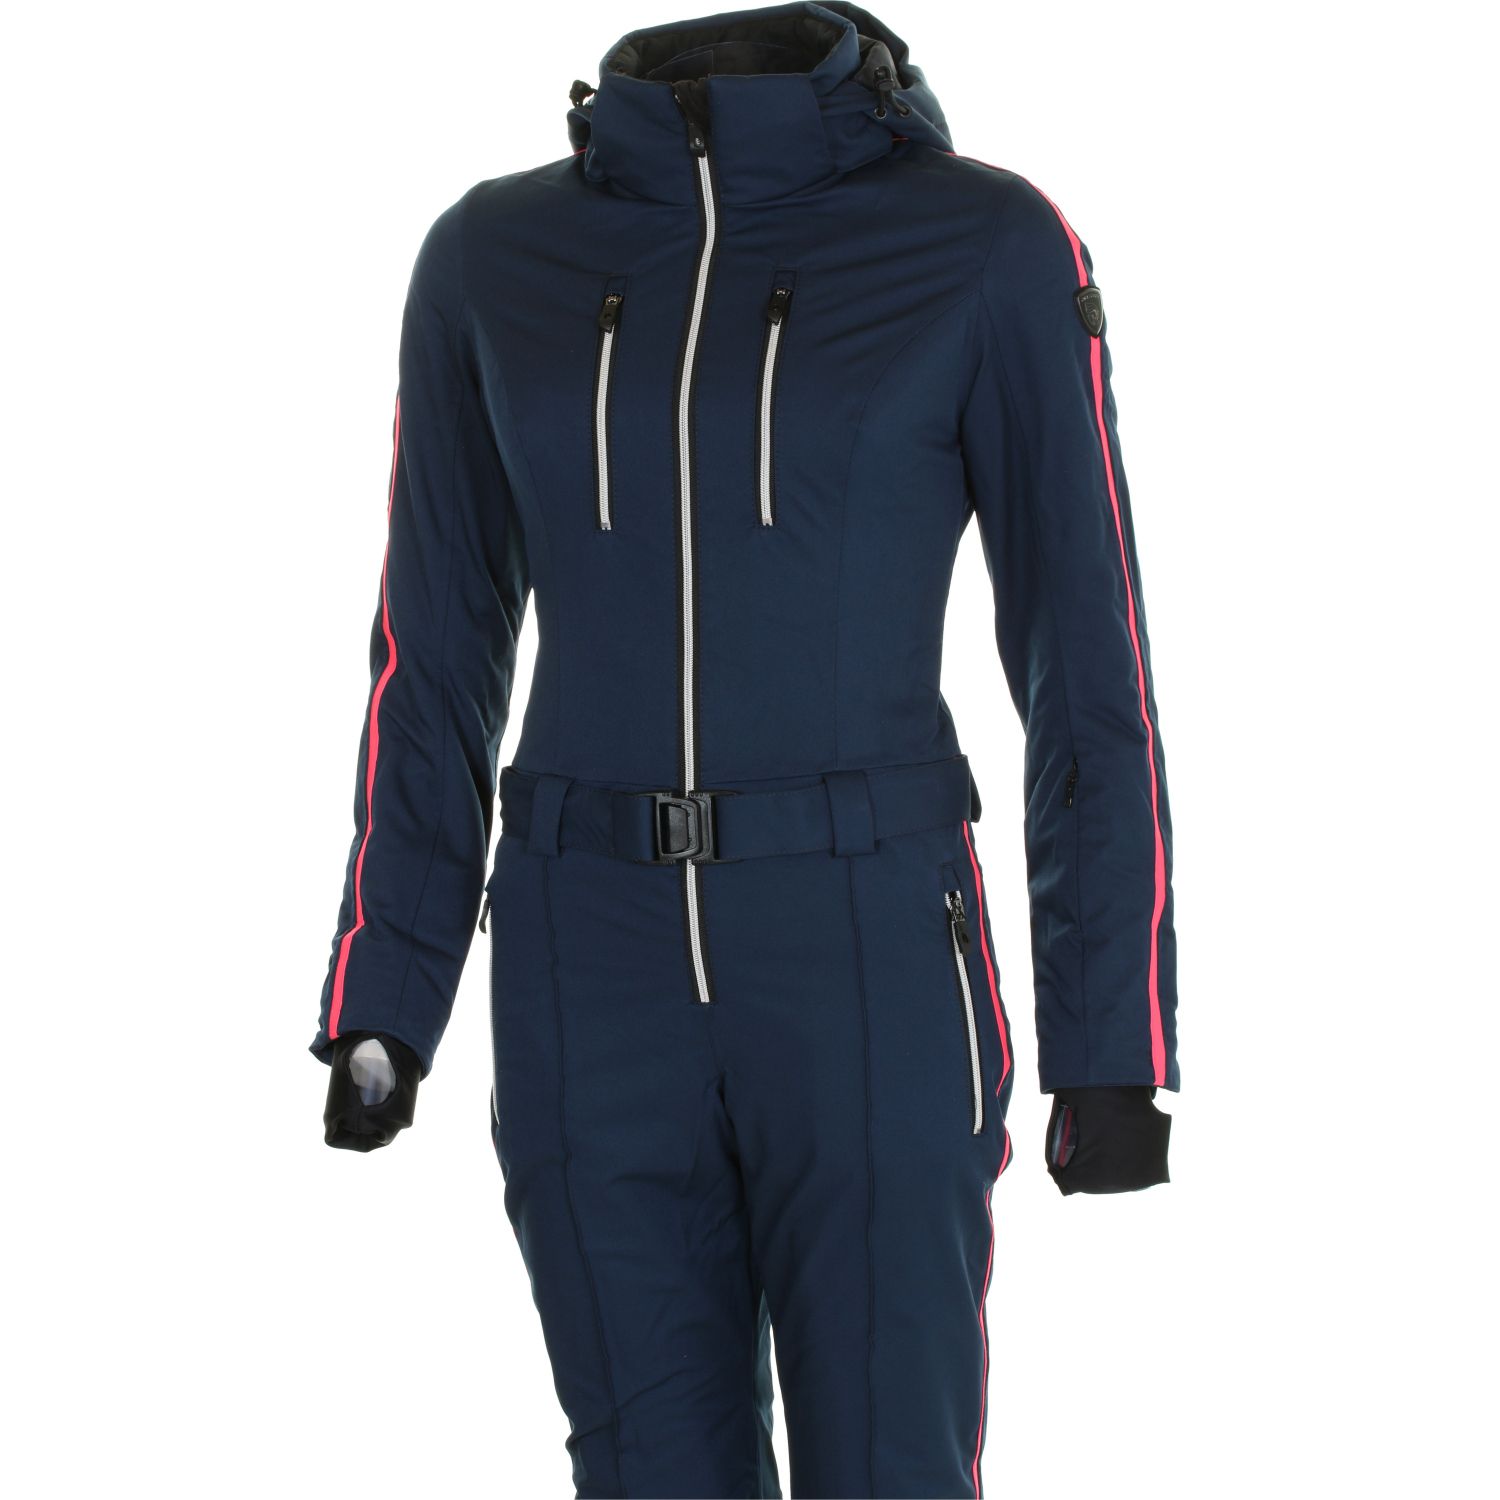 DIEL Sia ski suit, women, blue